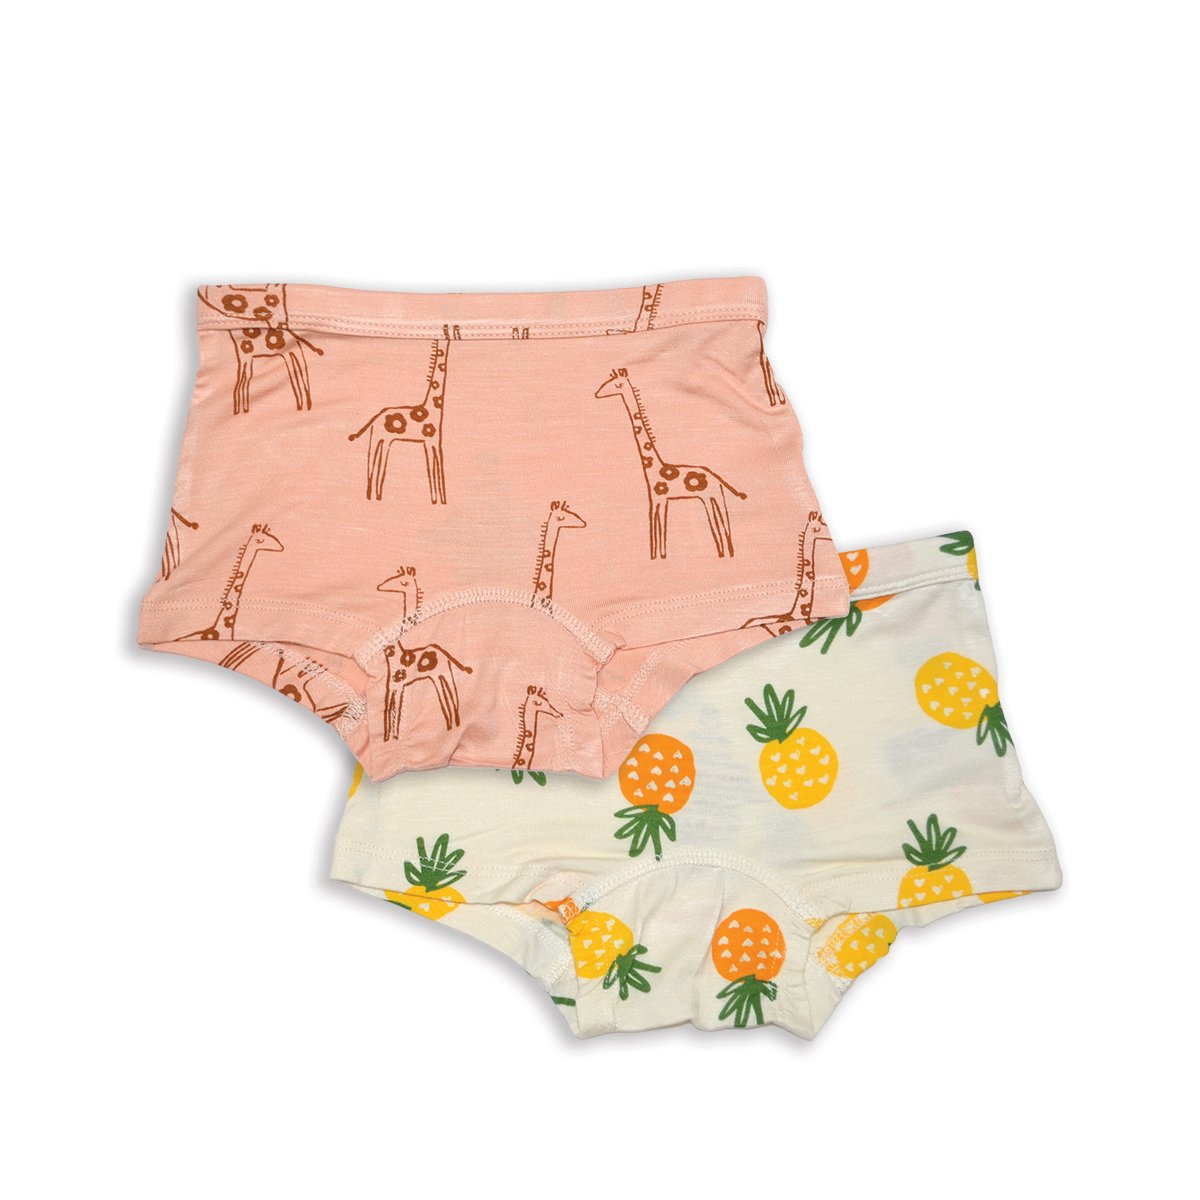 Bamboo Girls Boyshorts Underwear 2 pack (Daisy Giraffe/Pineapple